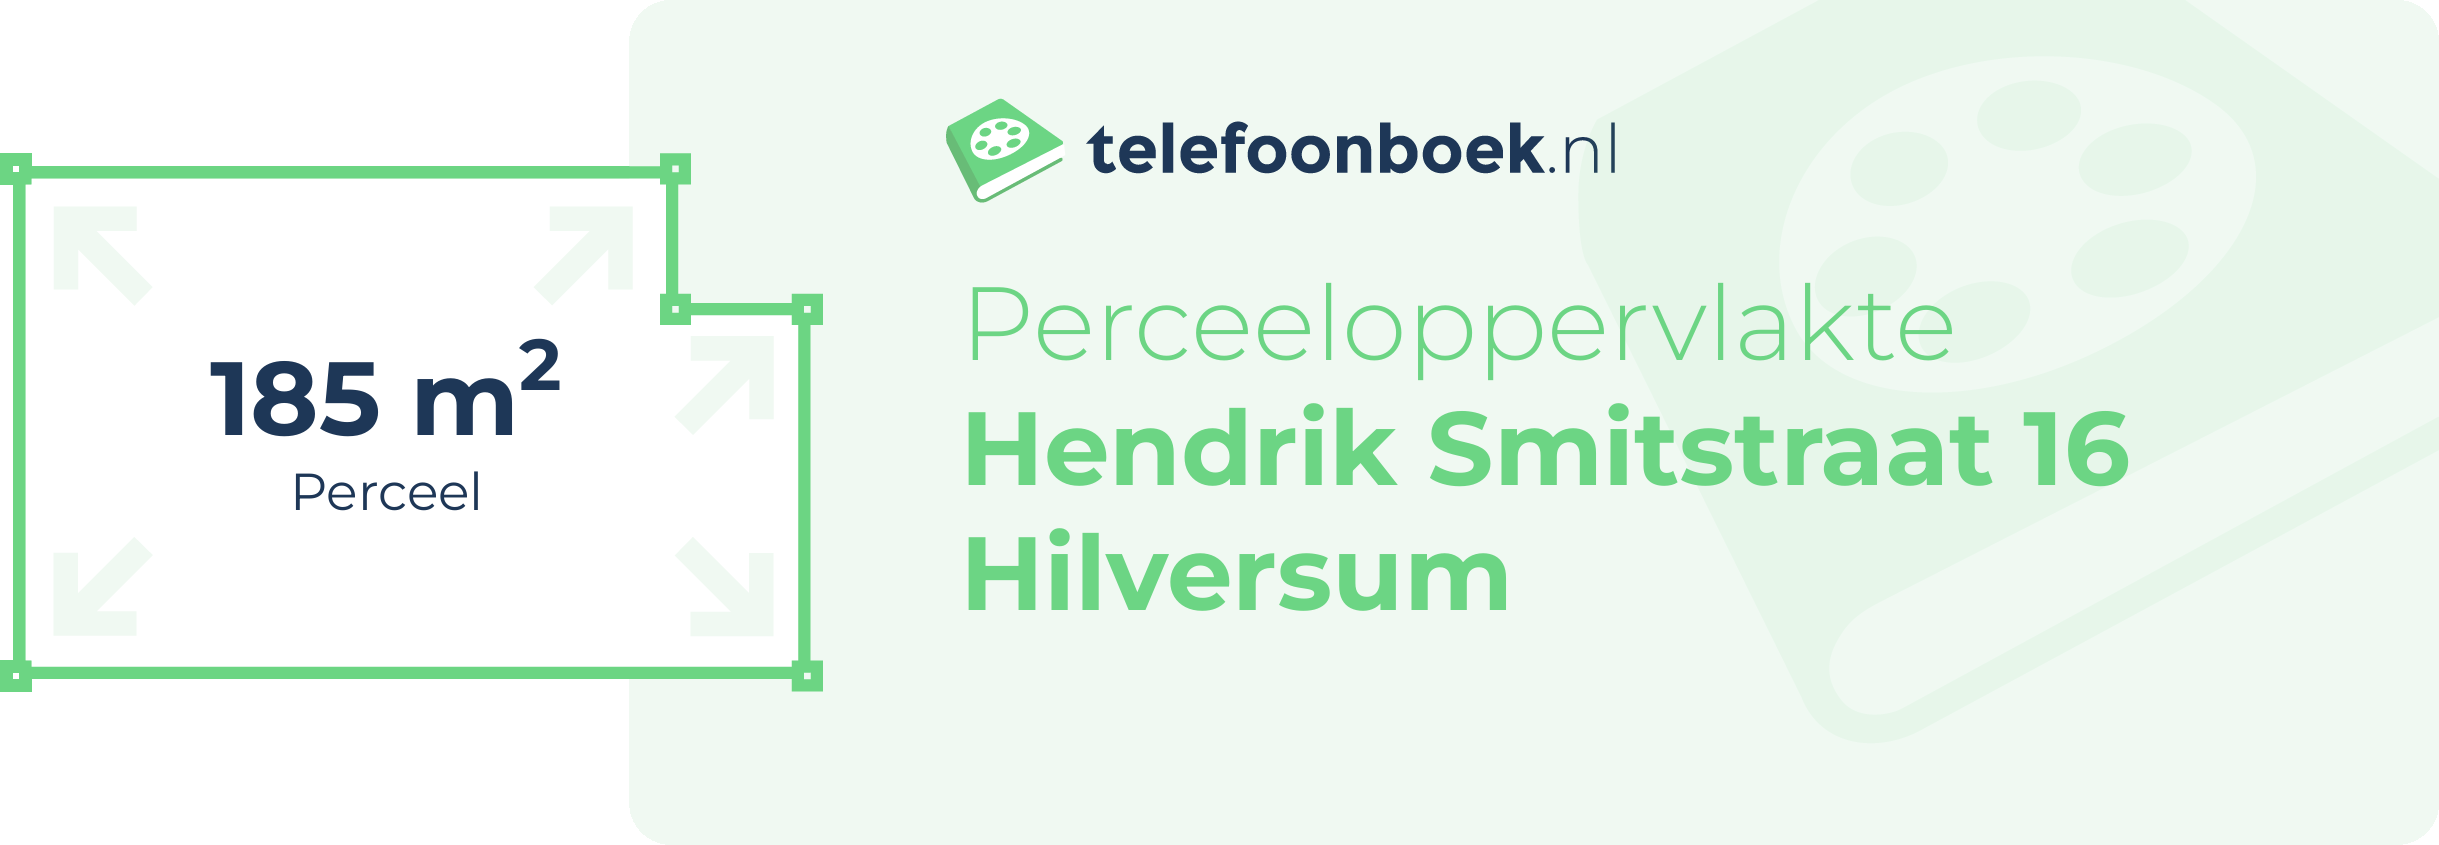 Perceeloppervlakte Hendrik Smitstraat 16 Hilversum